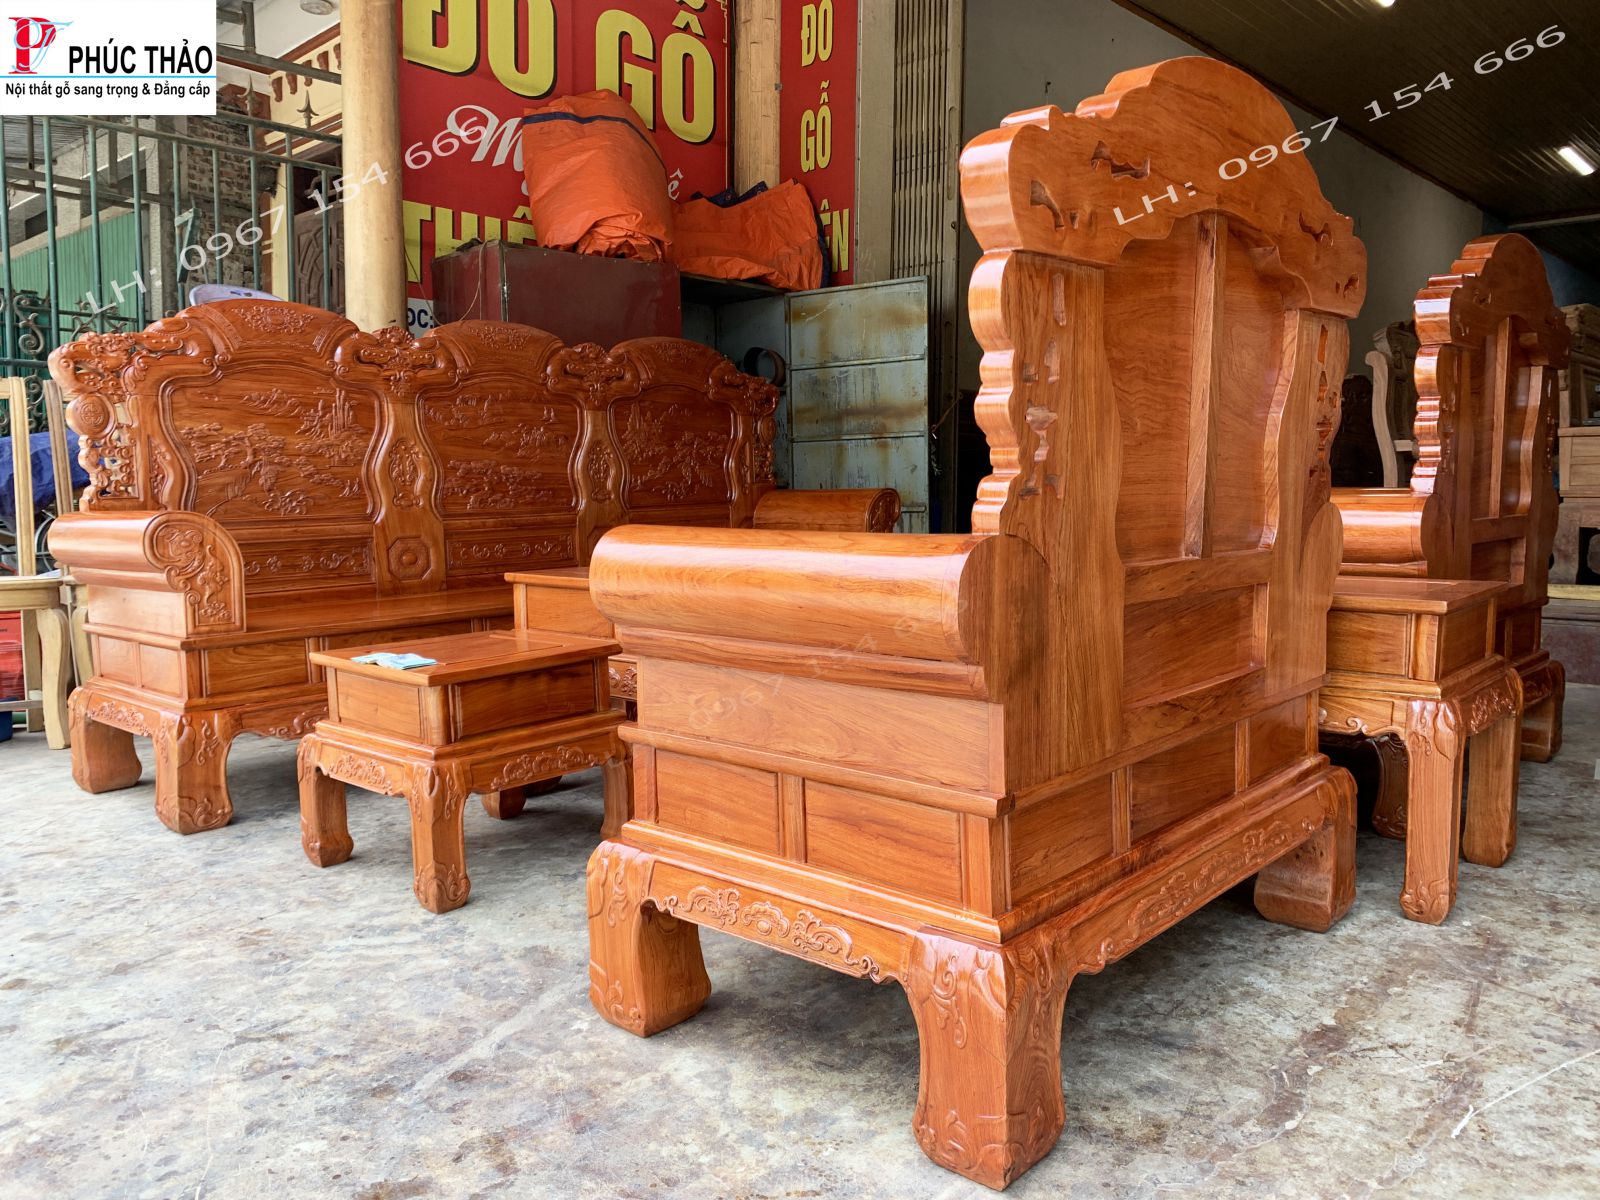 Phucthao.vn cơ sở bán bộ bàn ghế khổng minh gỗ hương